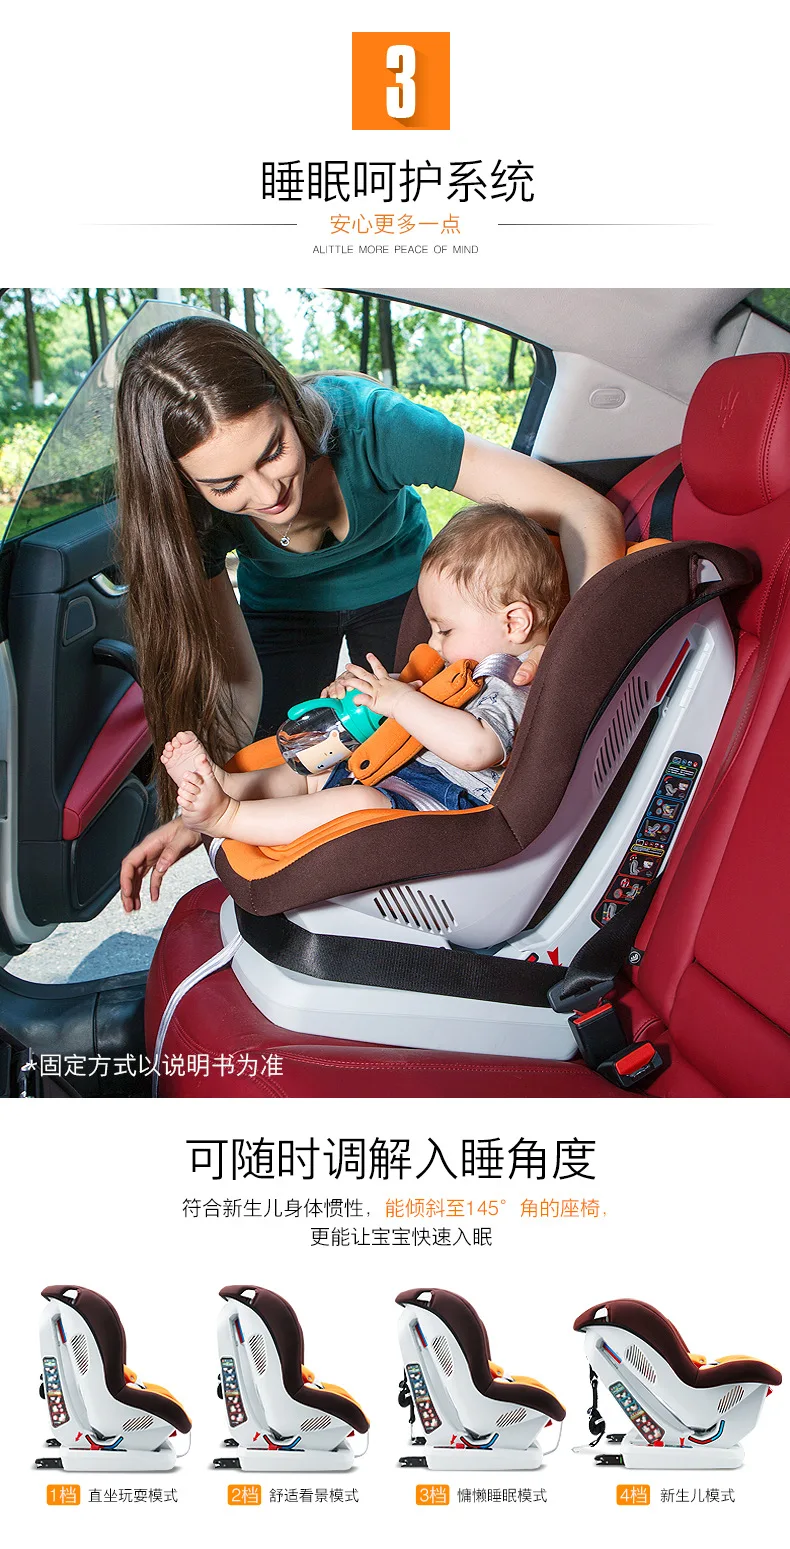 Детское автомобильное безопасное сиденье isofix с жестким интерфейсом для детей 0-4 лет, Портативное Универсальное Детское сиденье, детское автомобильное кресло